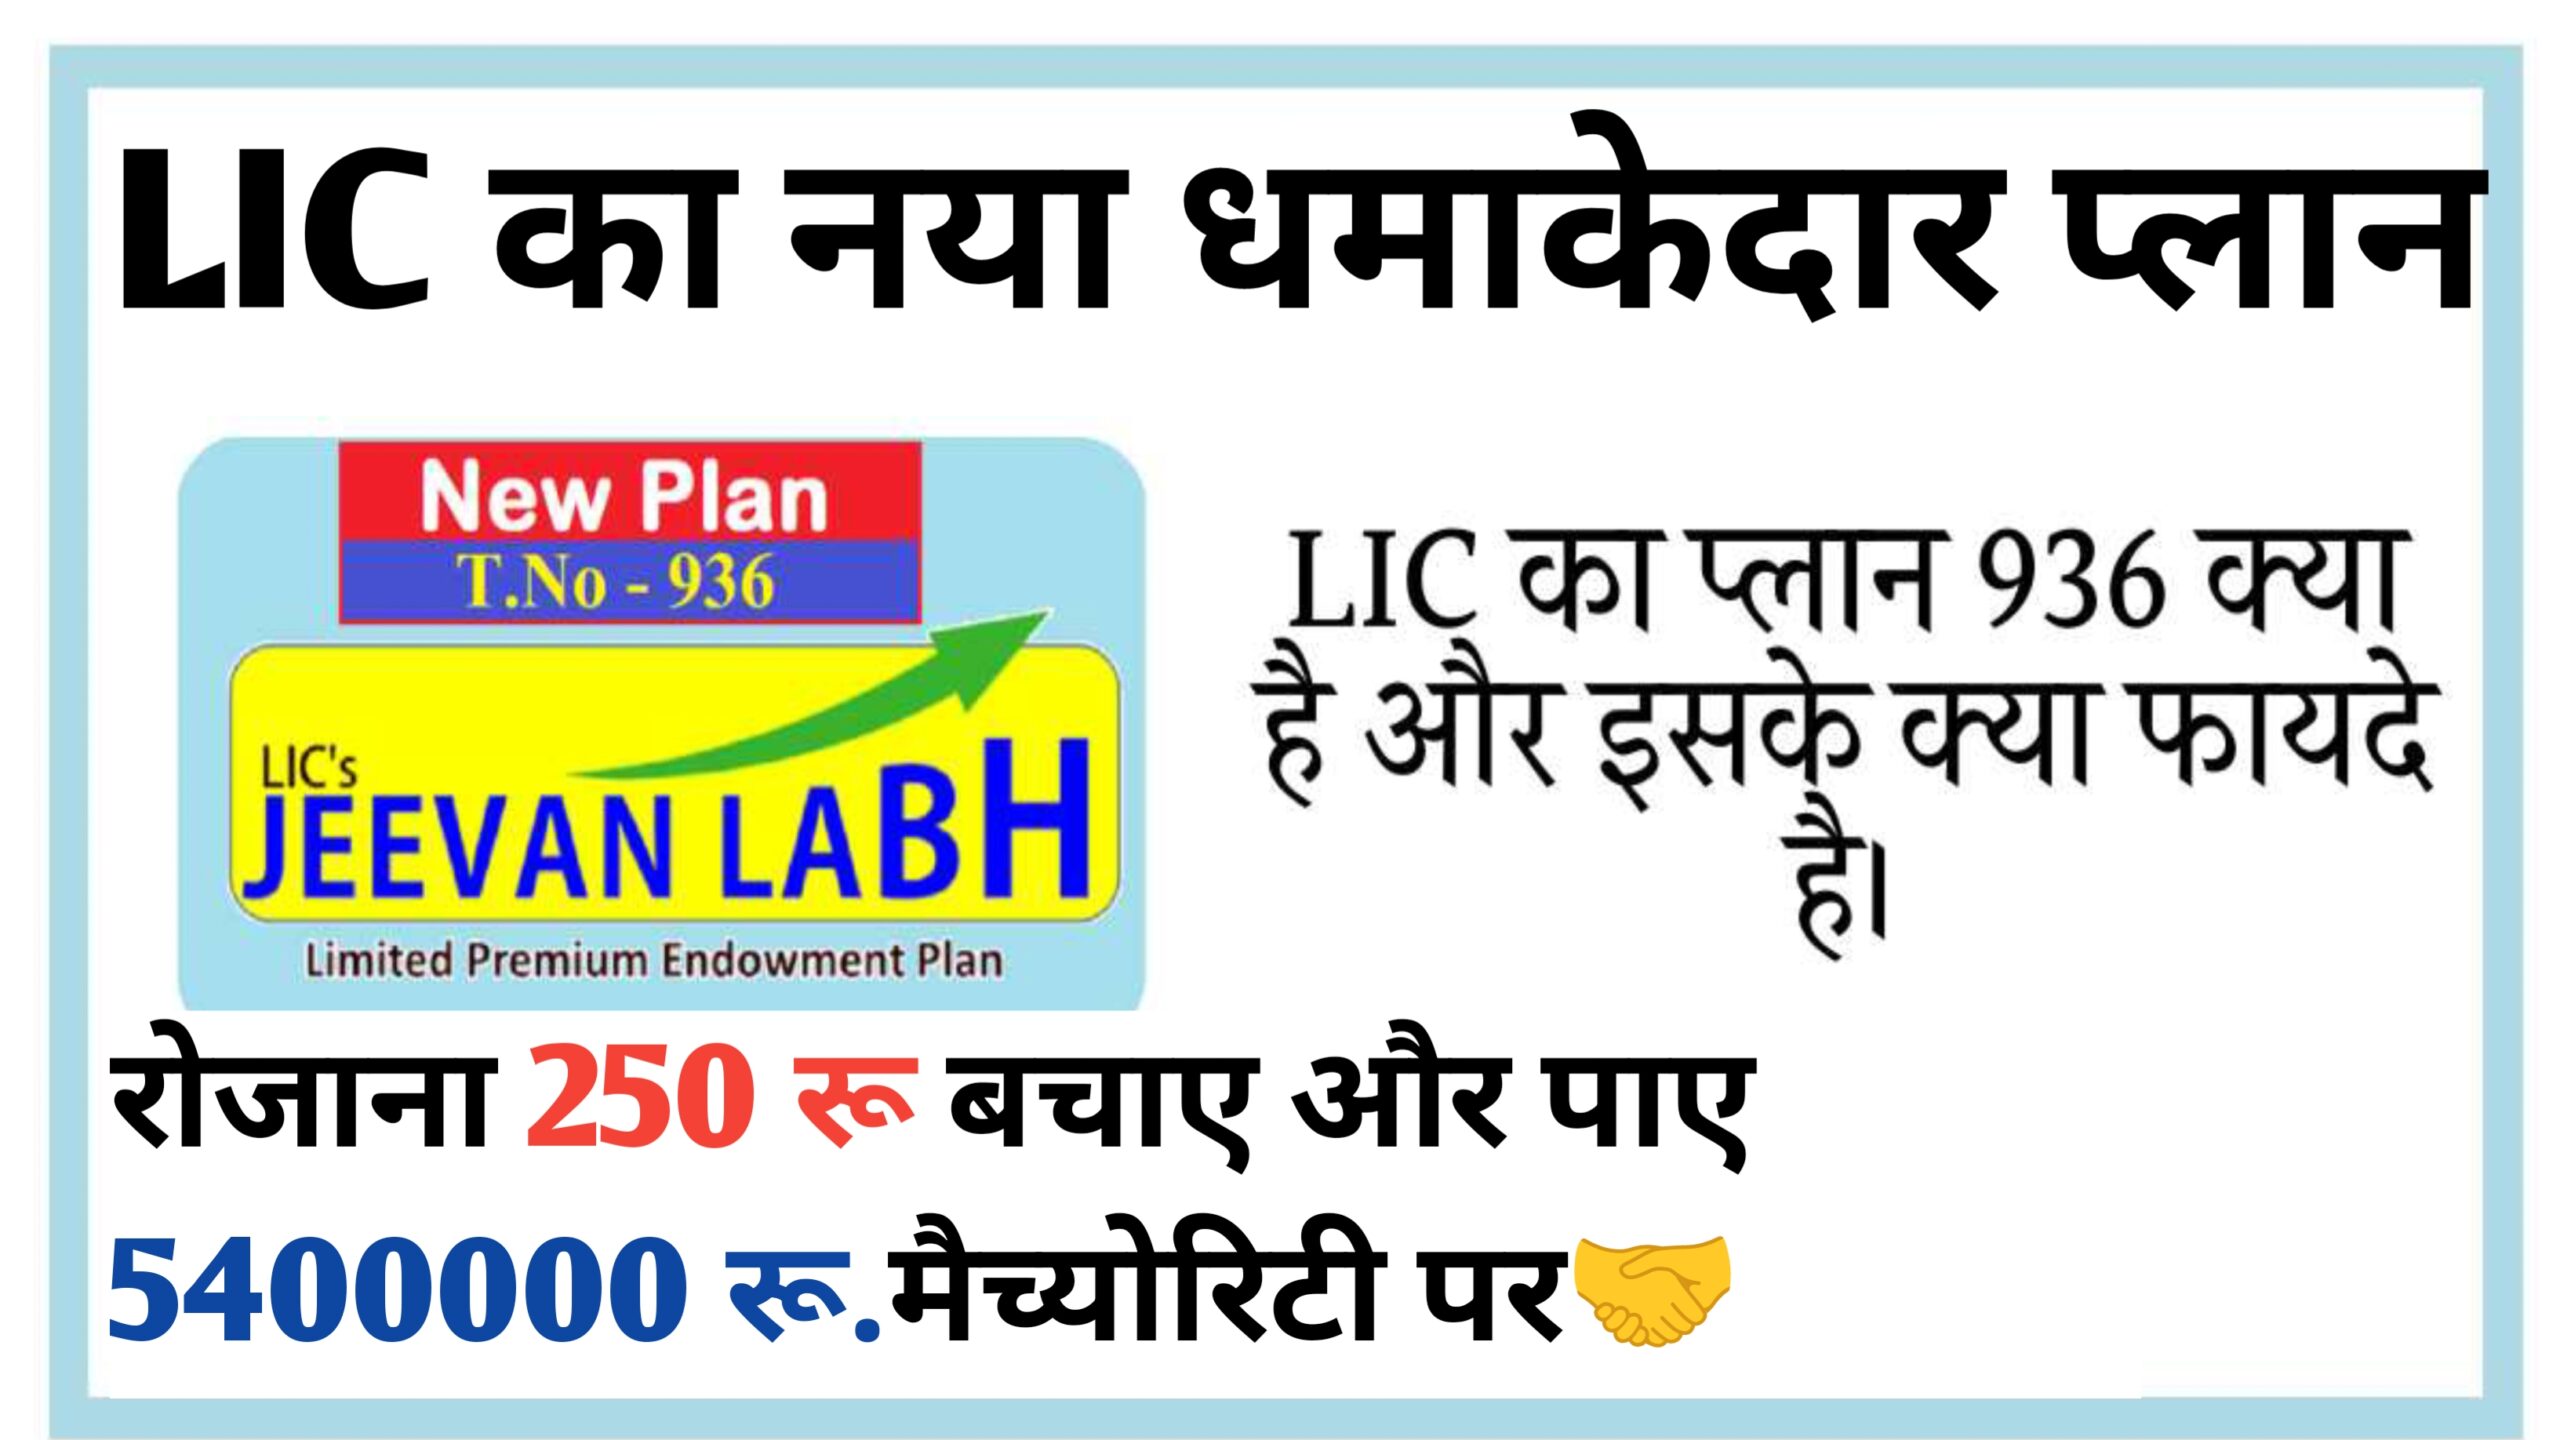 LIC New Jeevan Labh Plan